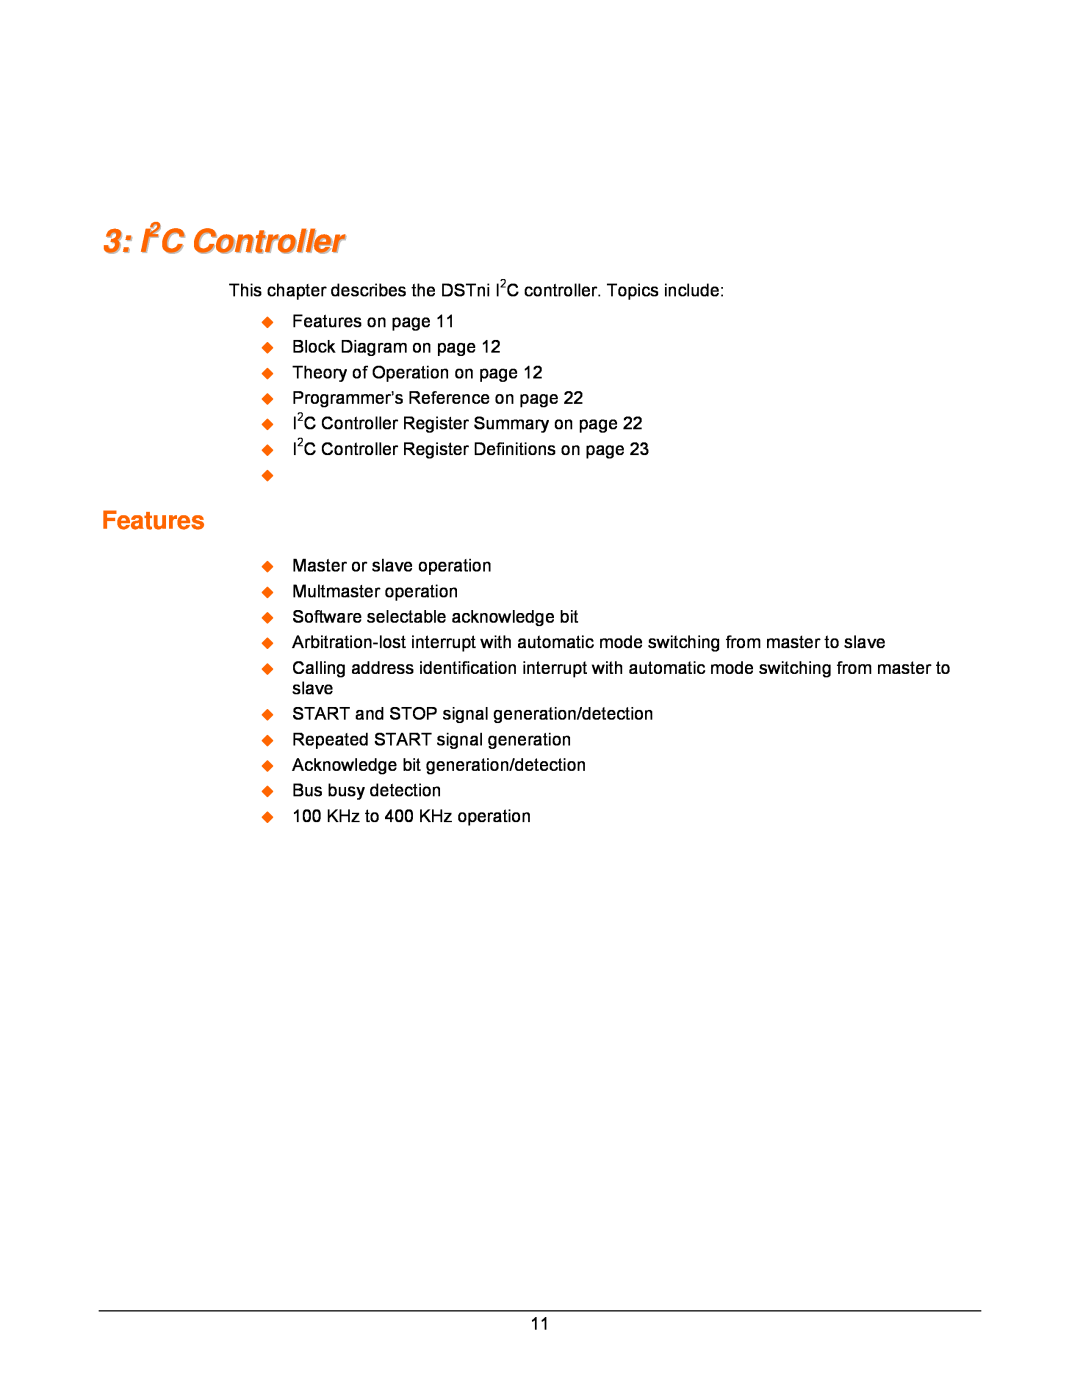 Lantronix DSTni-EX manual 3 I2C Controller, Features 